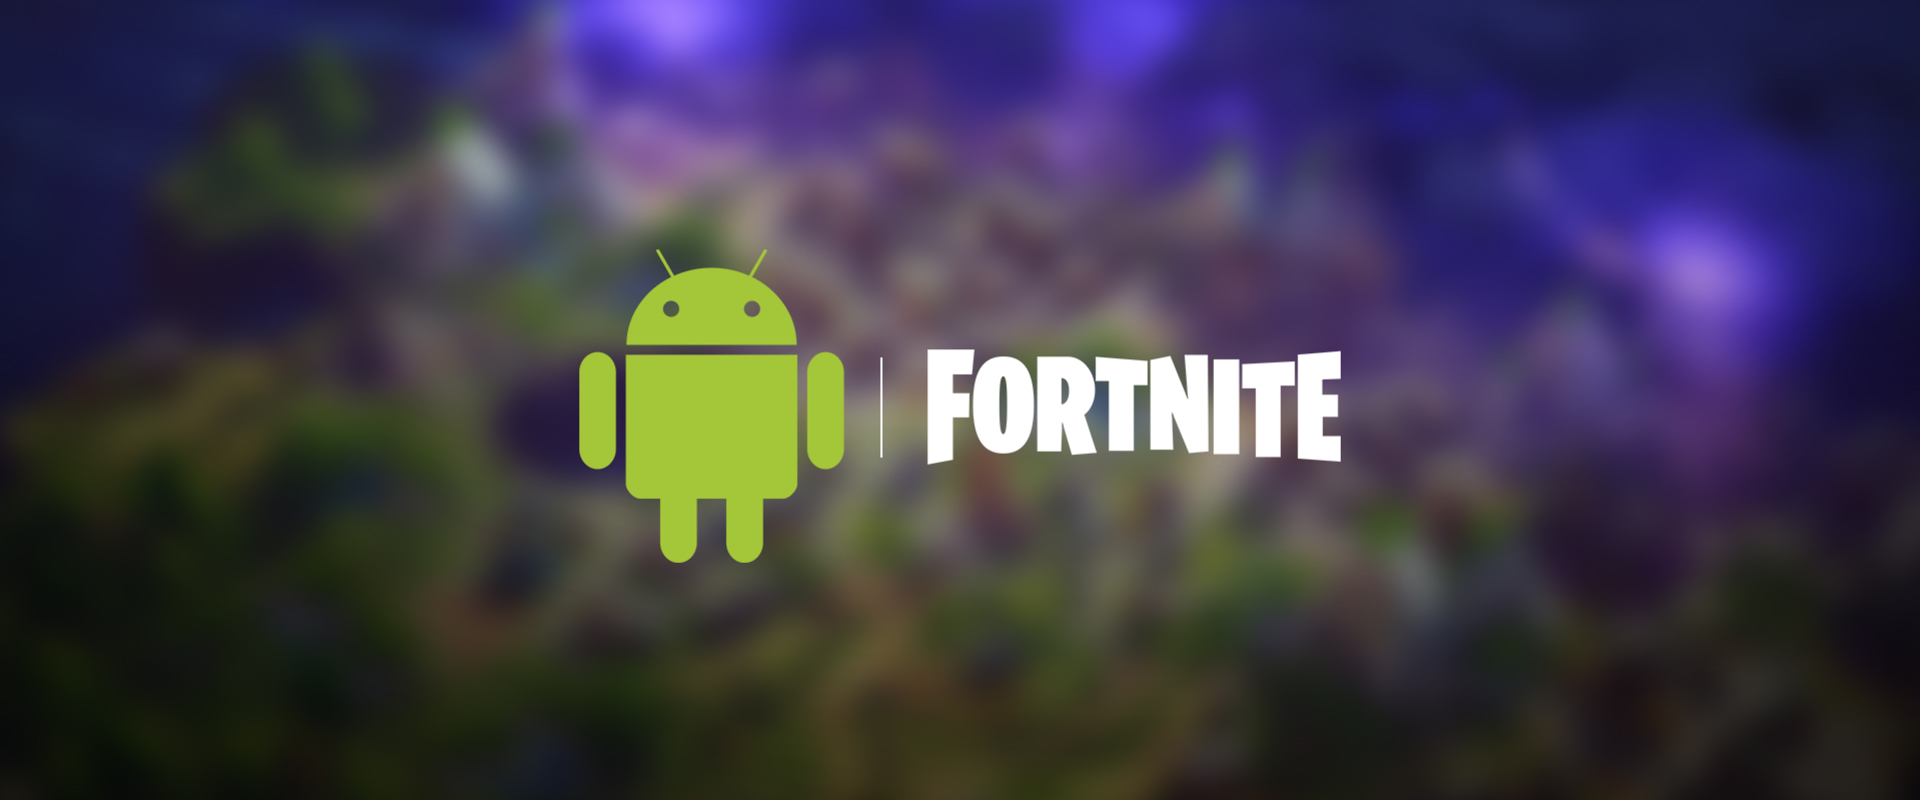 Szeptemberben érkezhet a Fortnite Androidos verziója